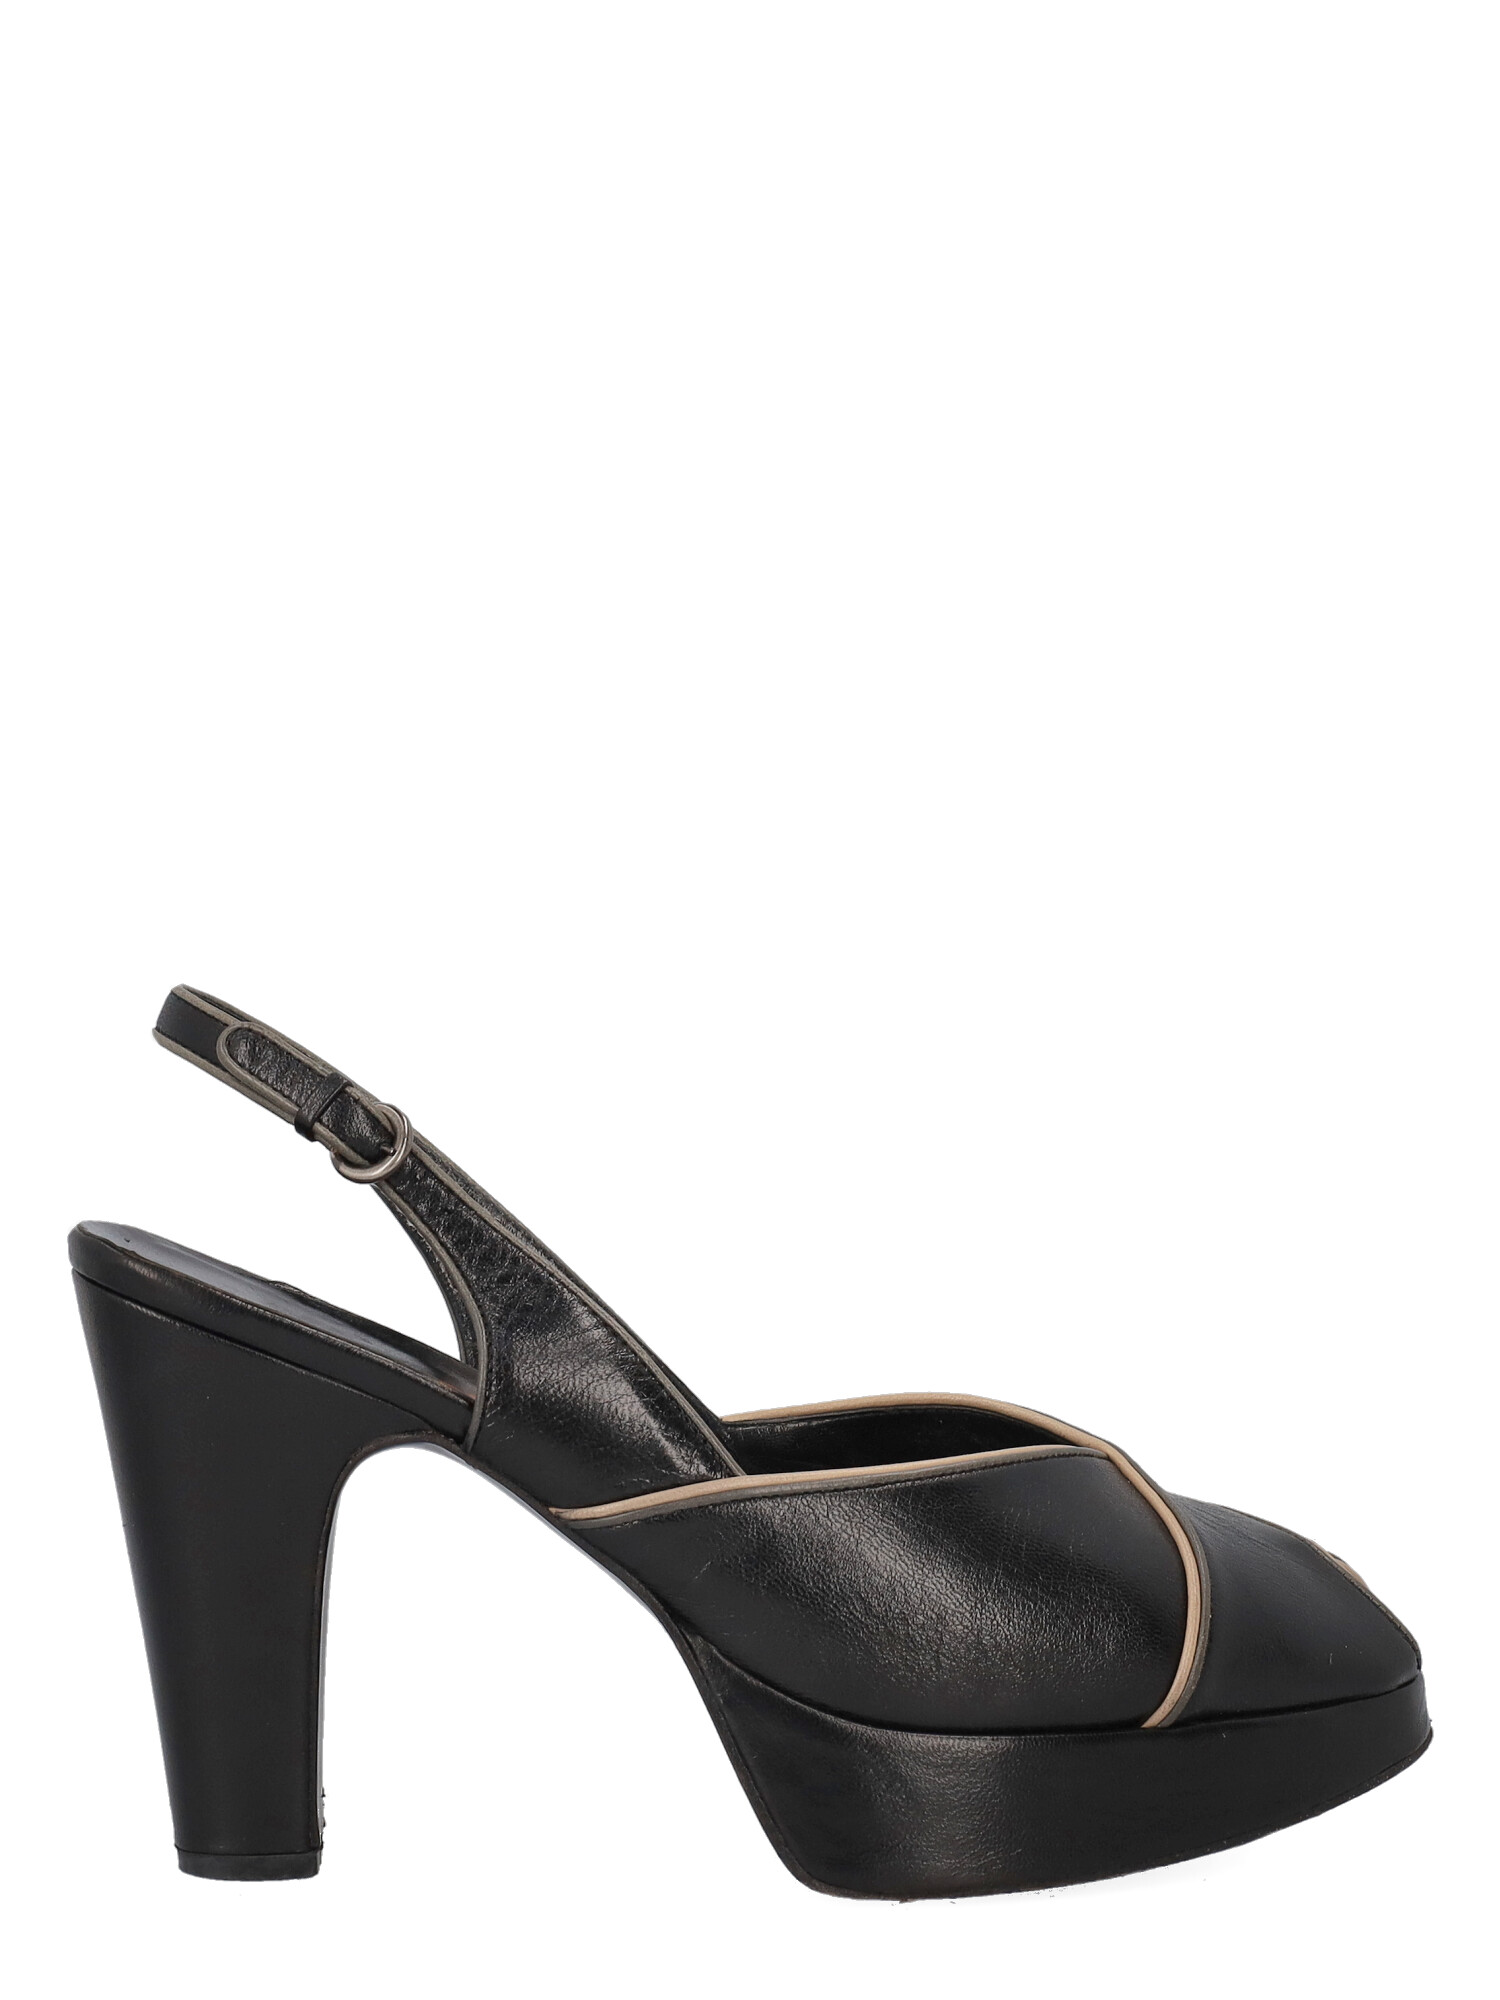 Sandales Pour Femme - Miu Miu - En Leather Black - Taille: IT 39.5 - EU 39.5